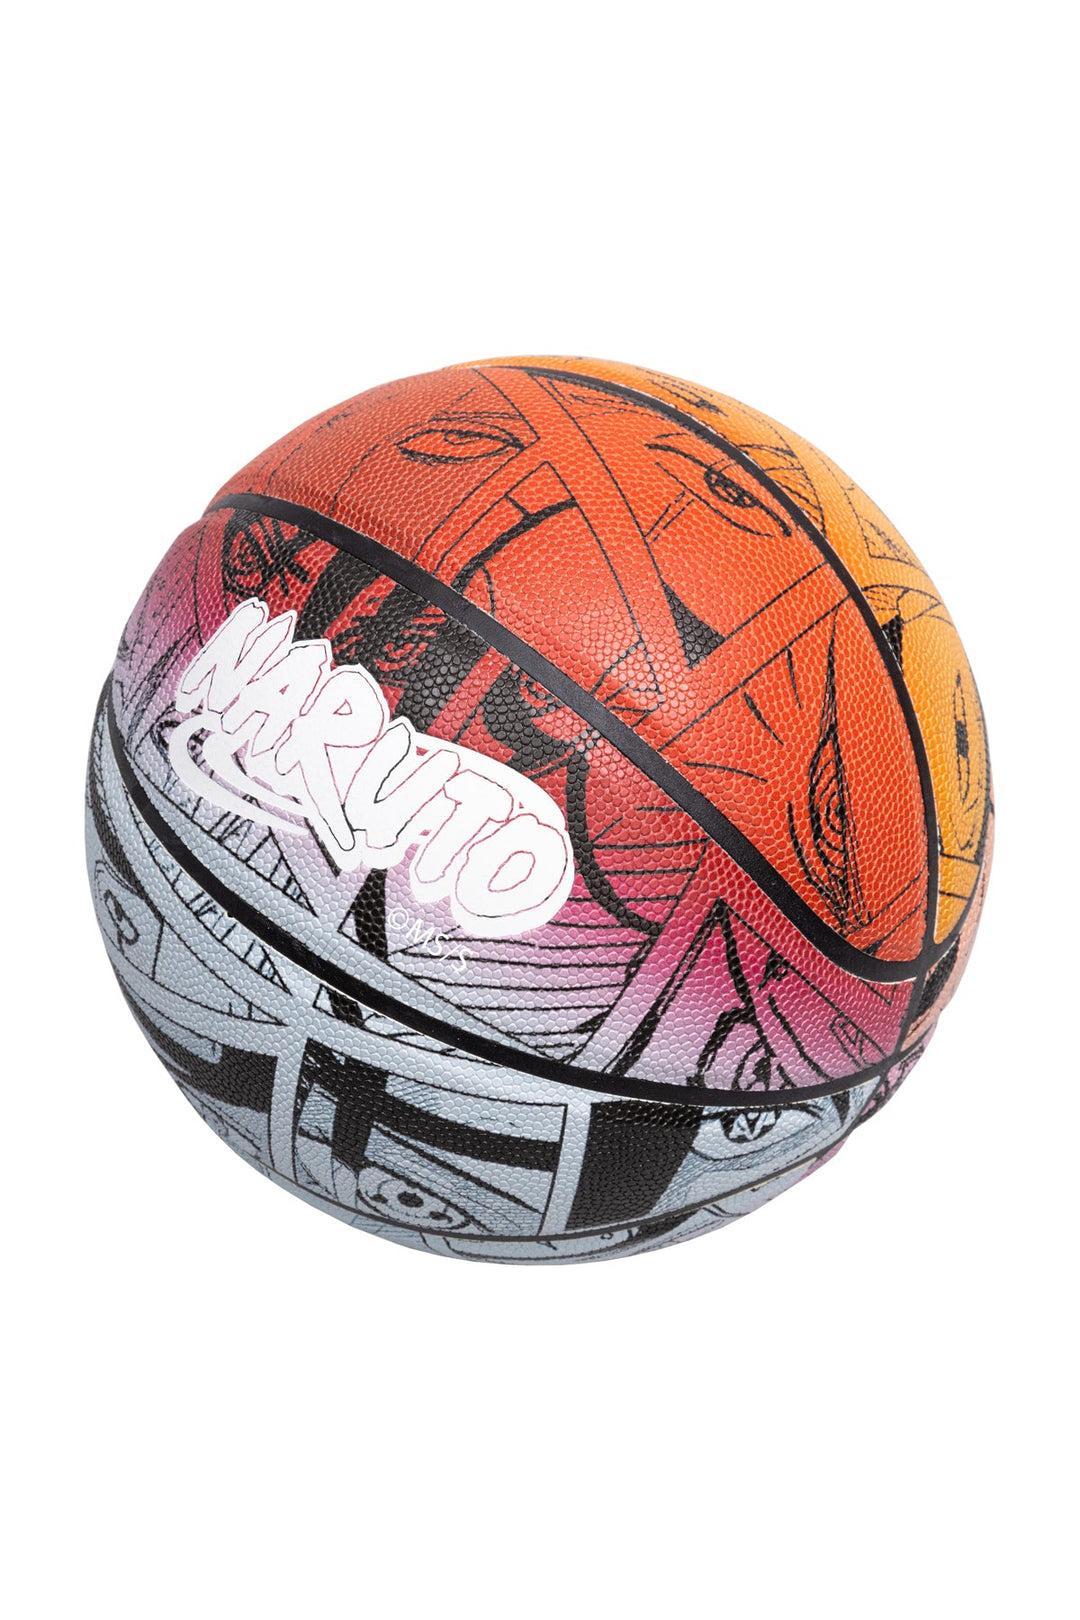 Naruto Manga Panel Collector Basketball - Multi